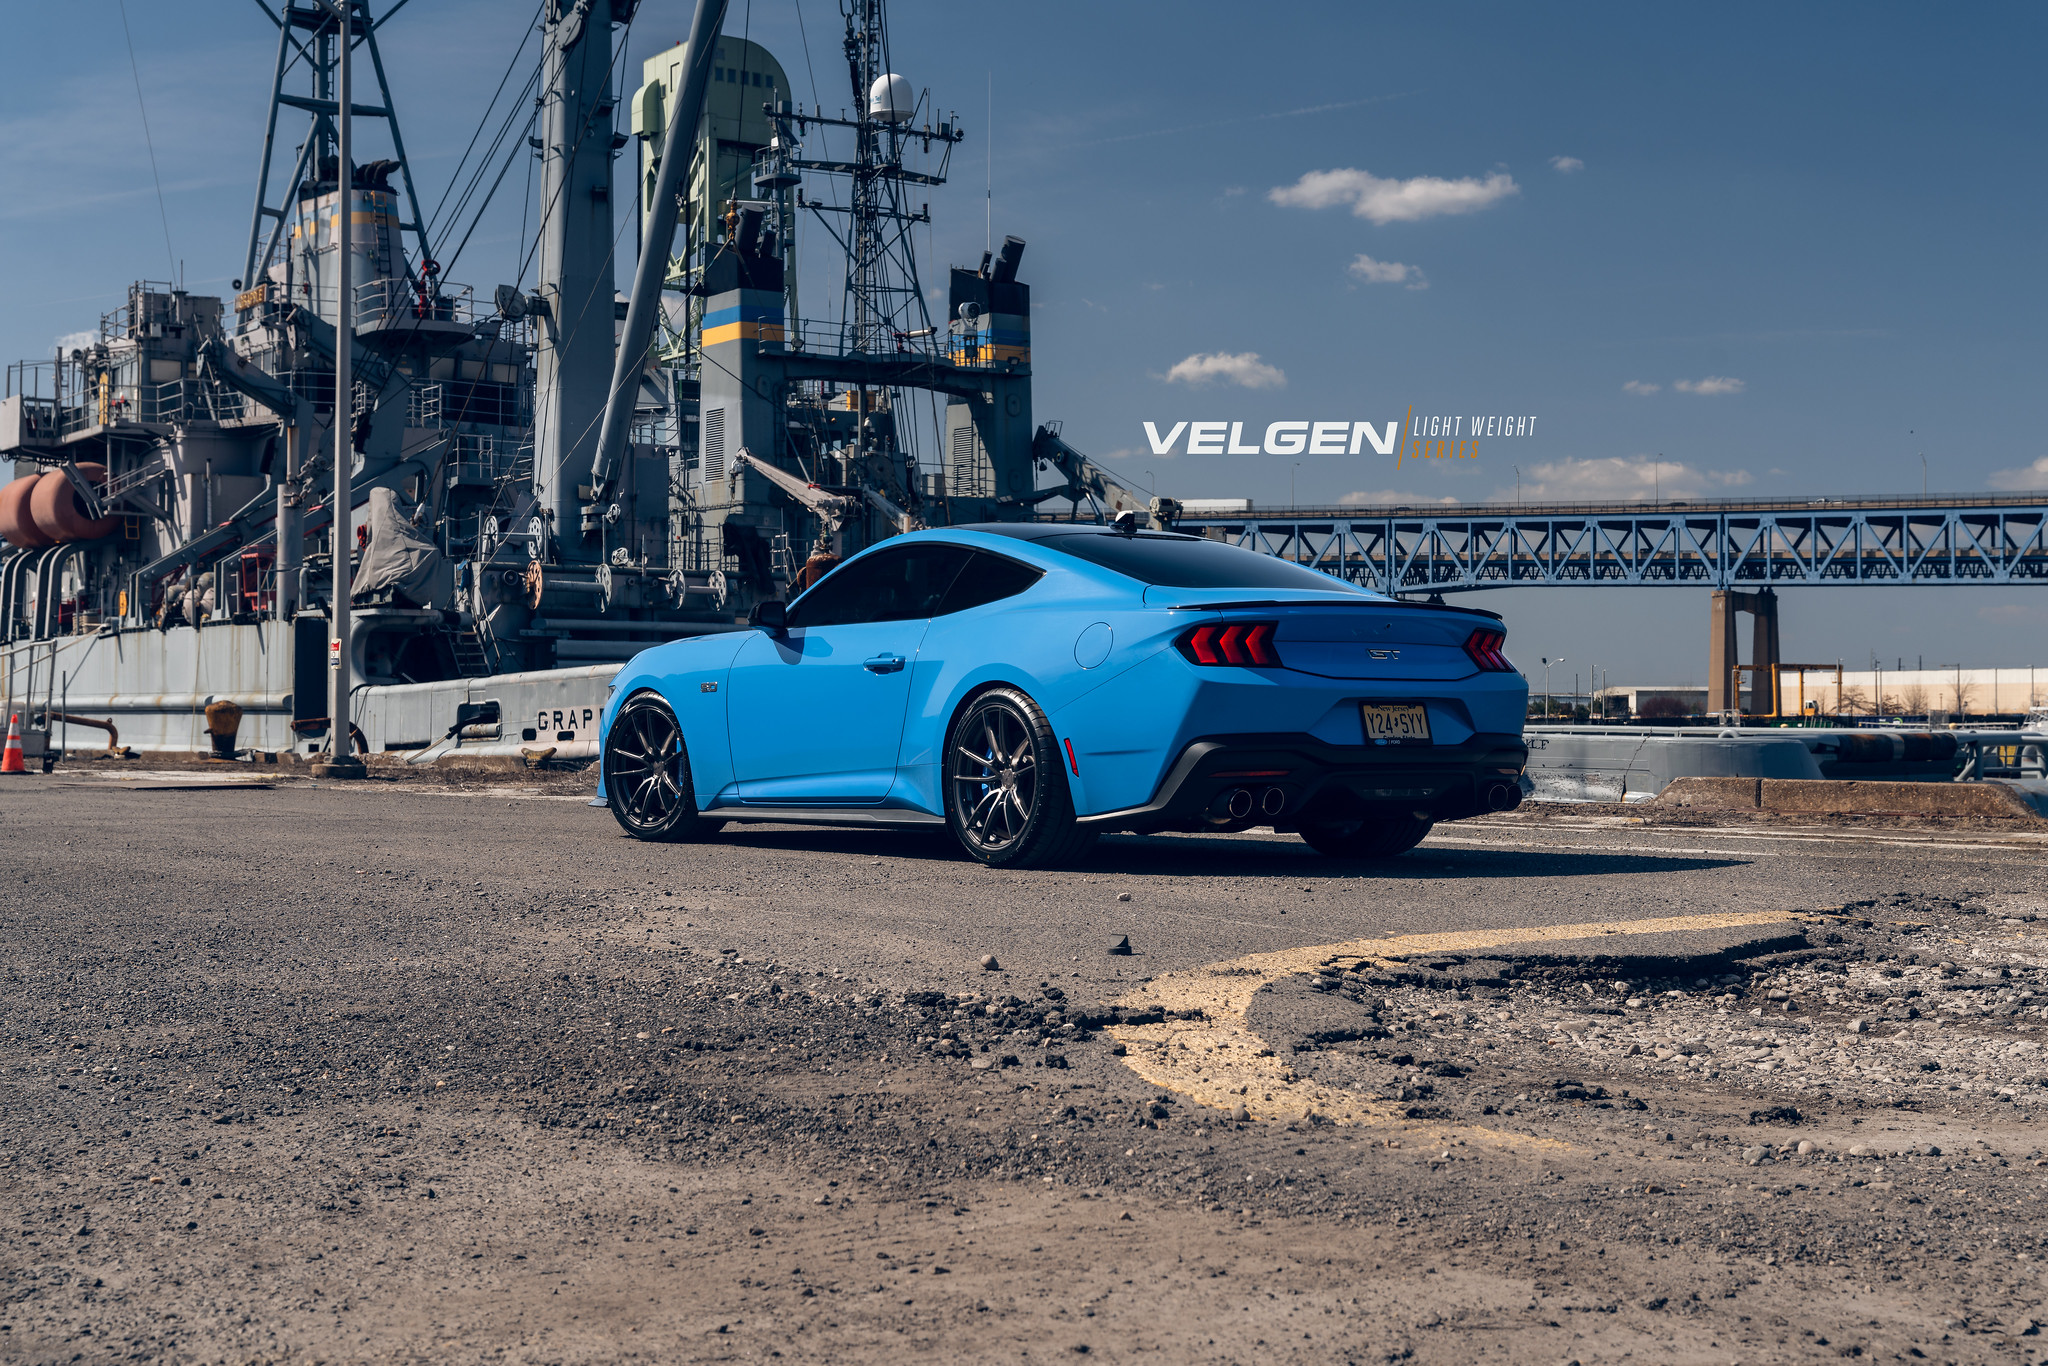 S650 Mustang Velgen wheels for your S650 Mustang | Vibe Motorsports 53602287504_3b93739816_k